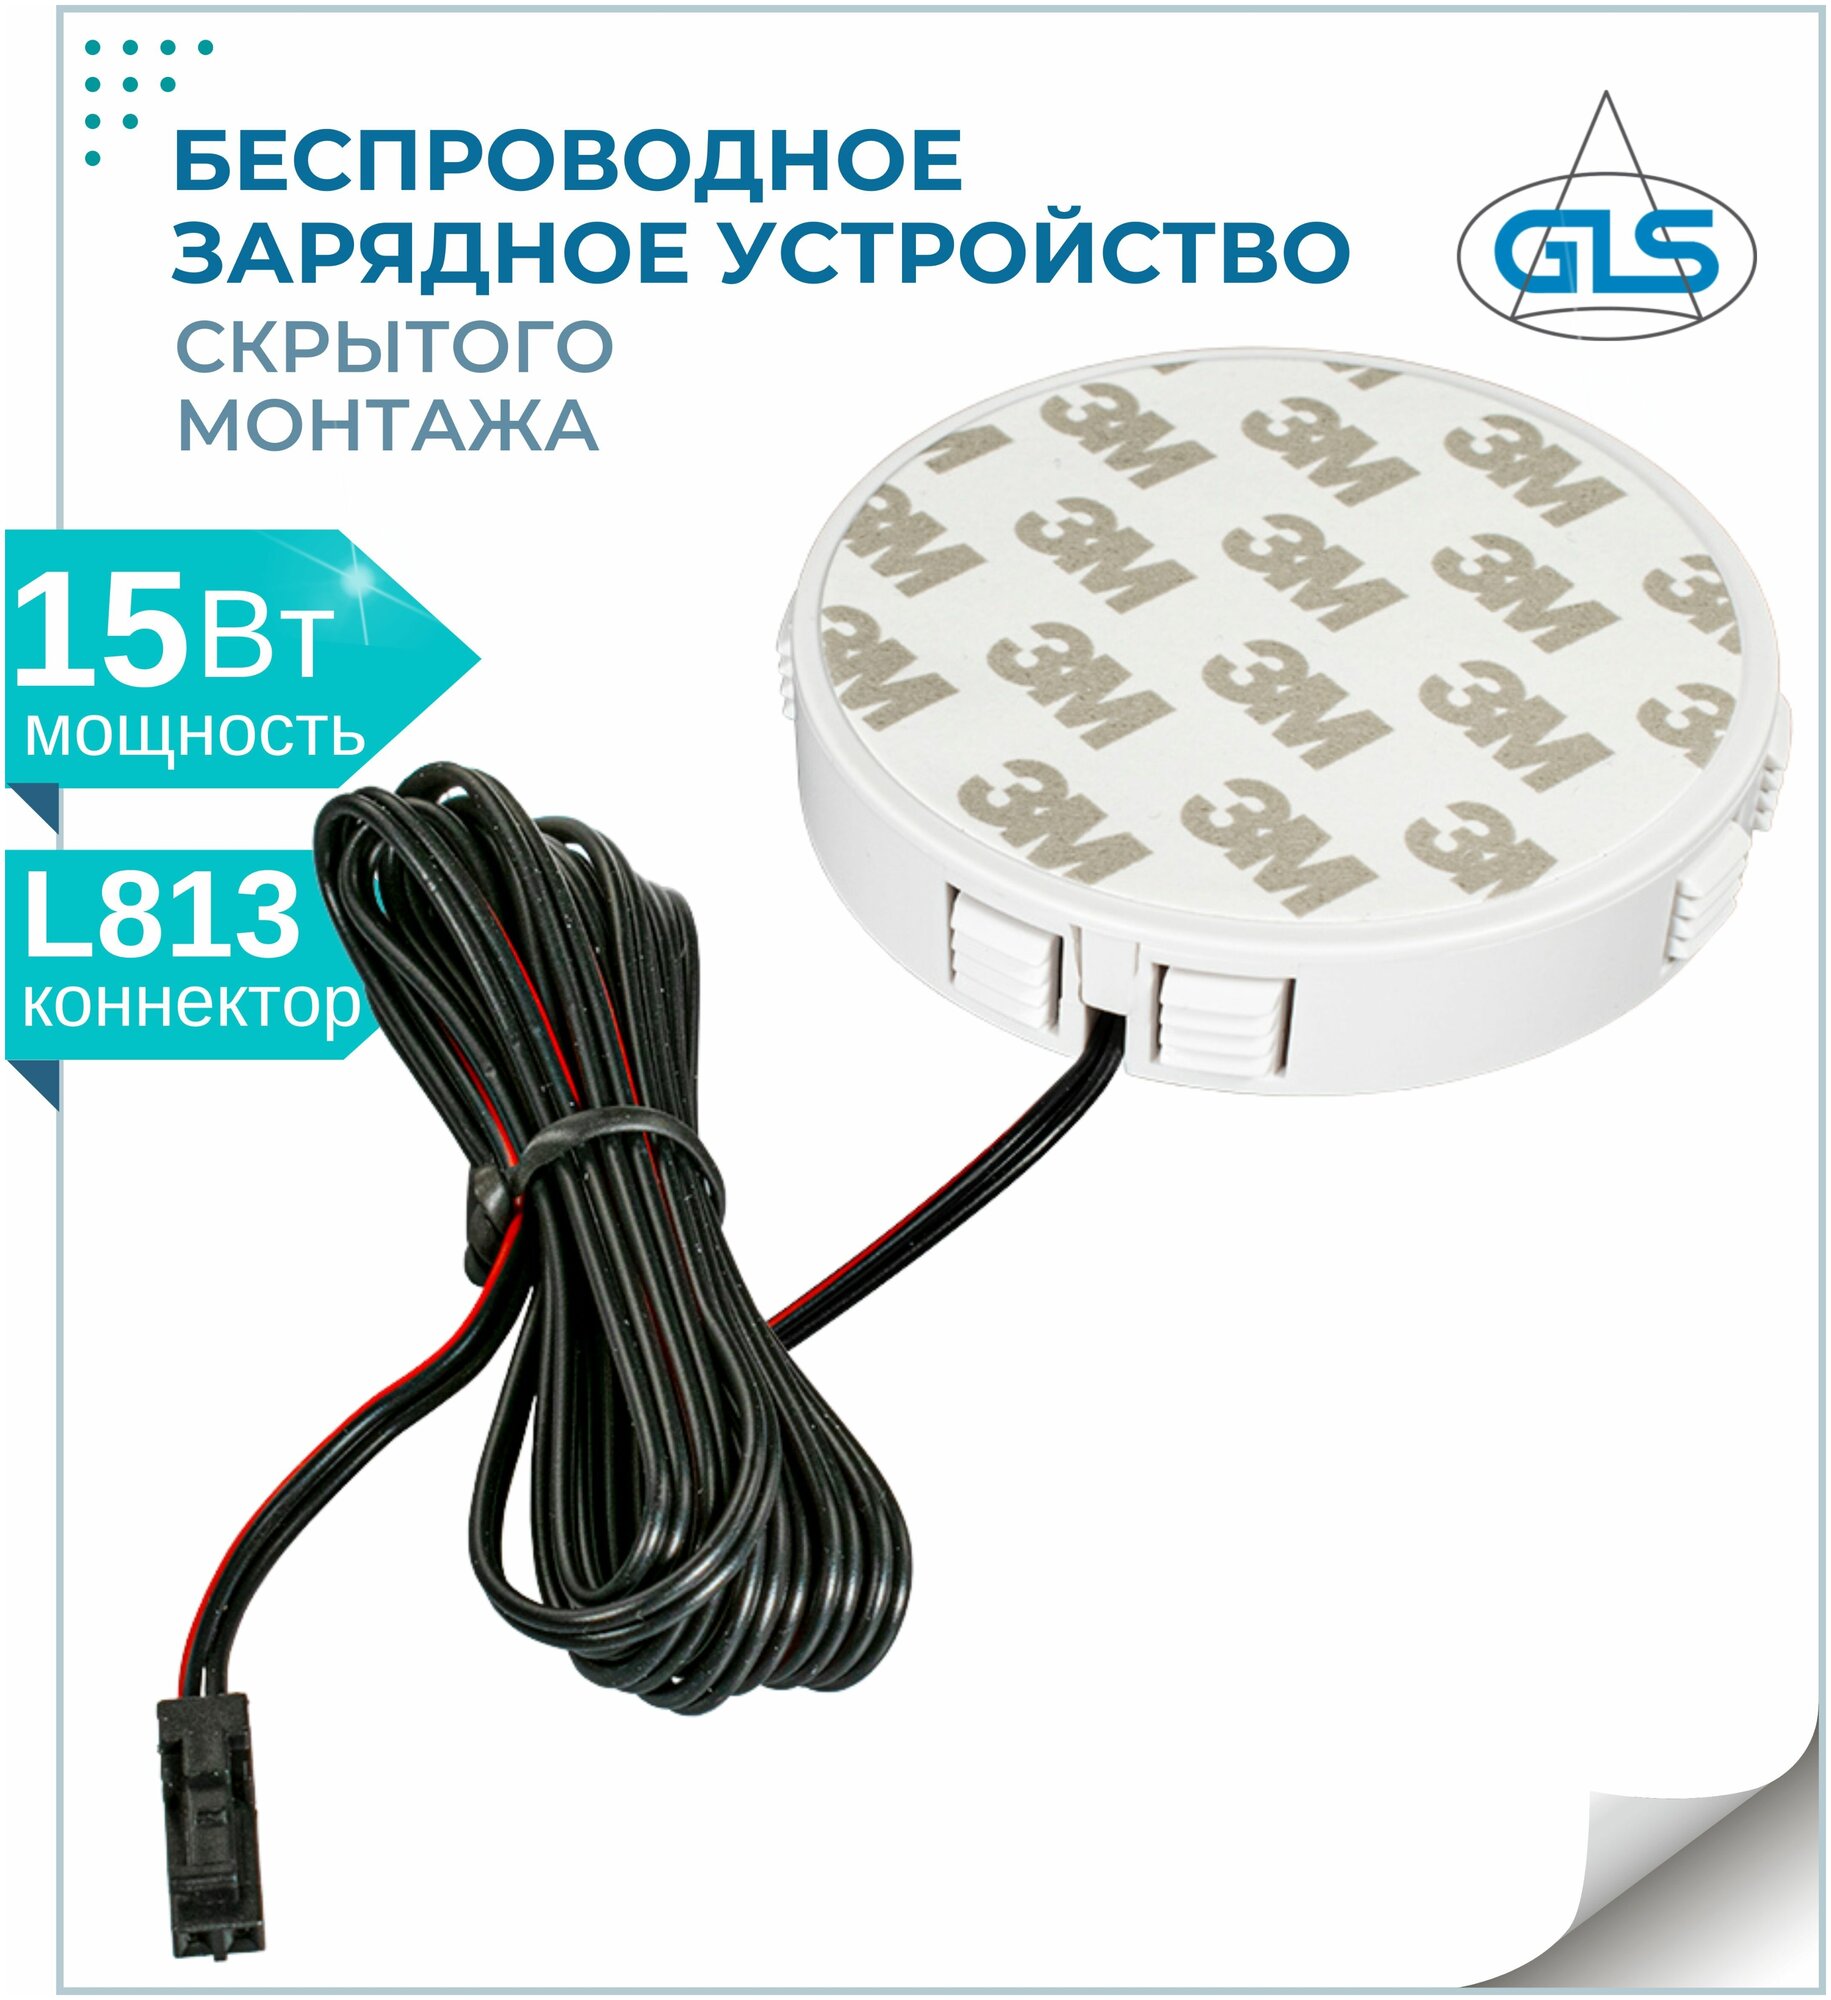 Беспроводное зарядное устройство скрытого монтажа SECRET GLS 15Вт 12В L813 зарядка встраиваемая мебельная